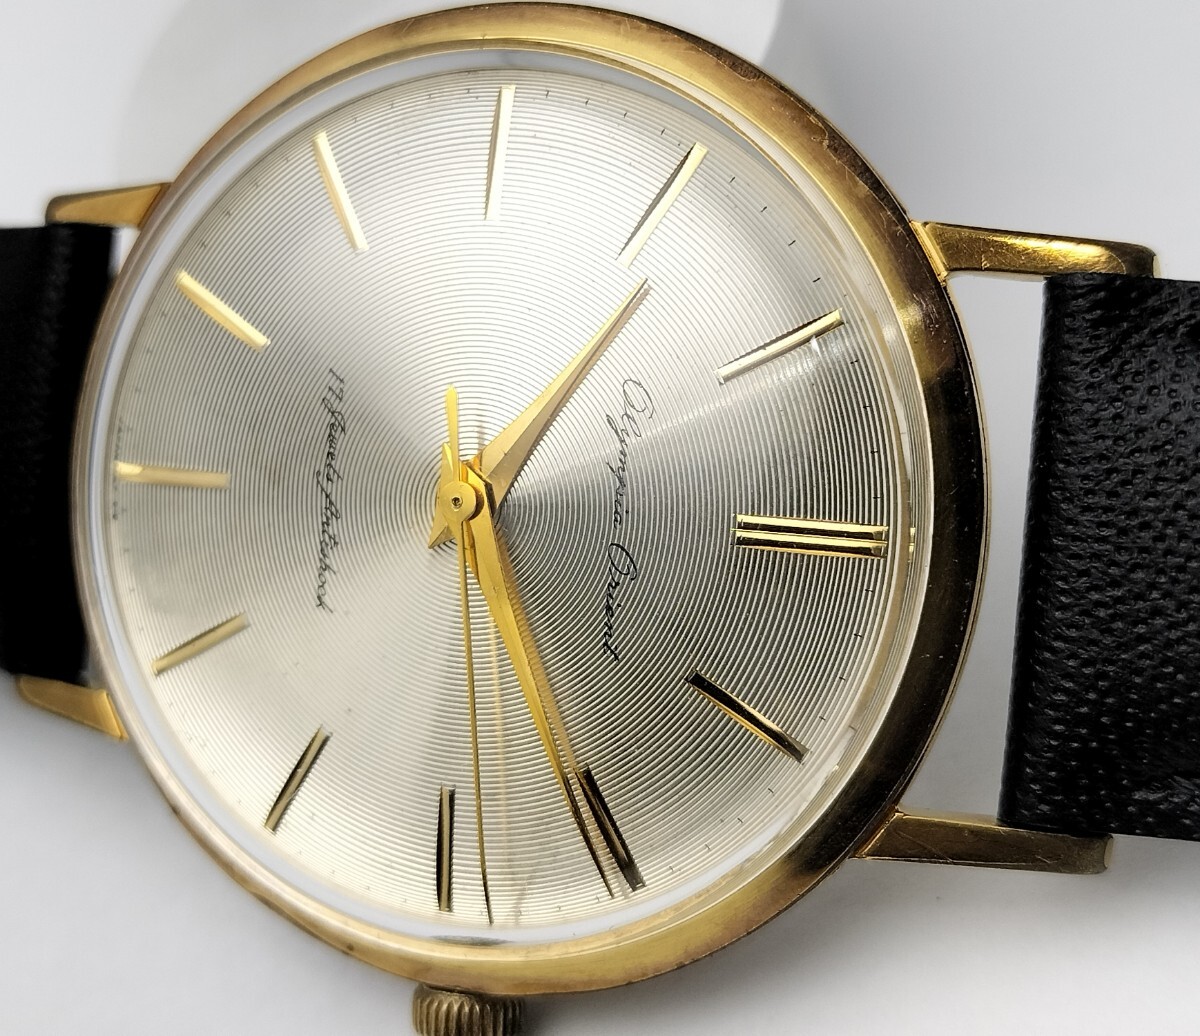 オリエント オリンピア 手巻き式腕時計 1961年製造開始 円周線上加工文字盤の画像3